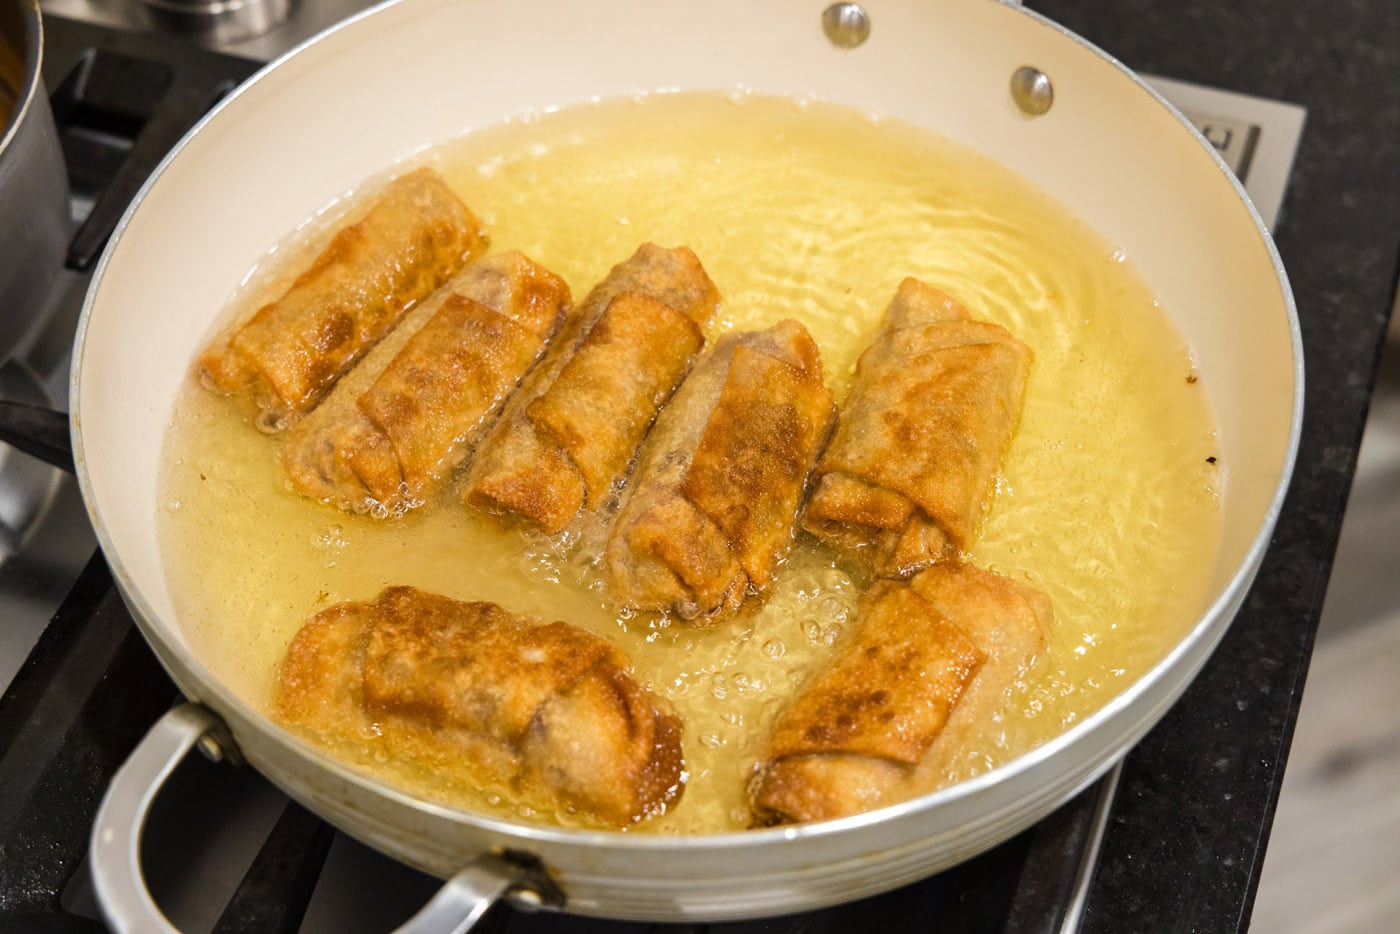 golden fried reuben egg rolls in a skillet of oil